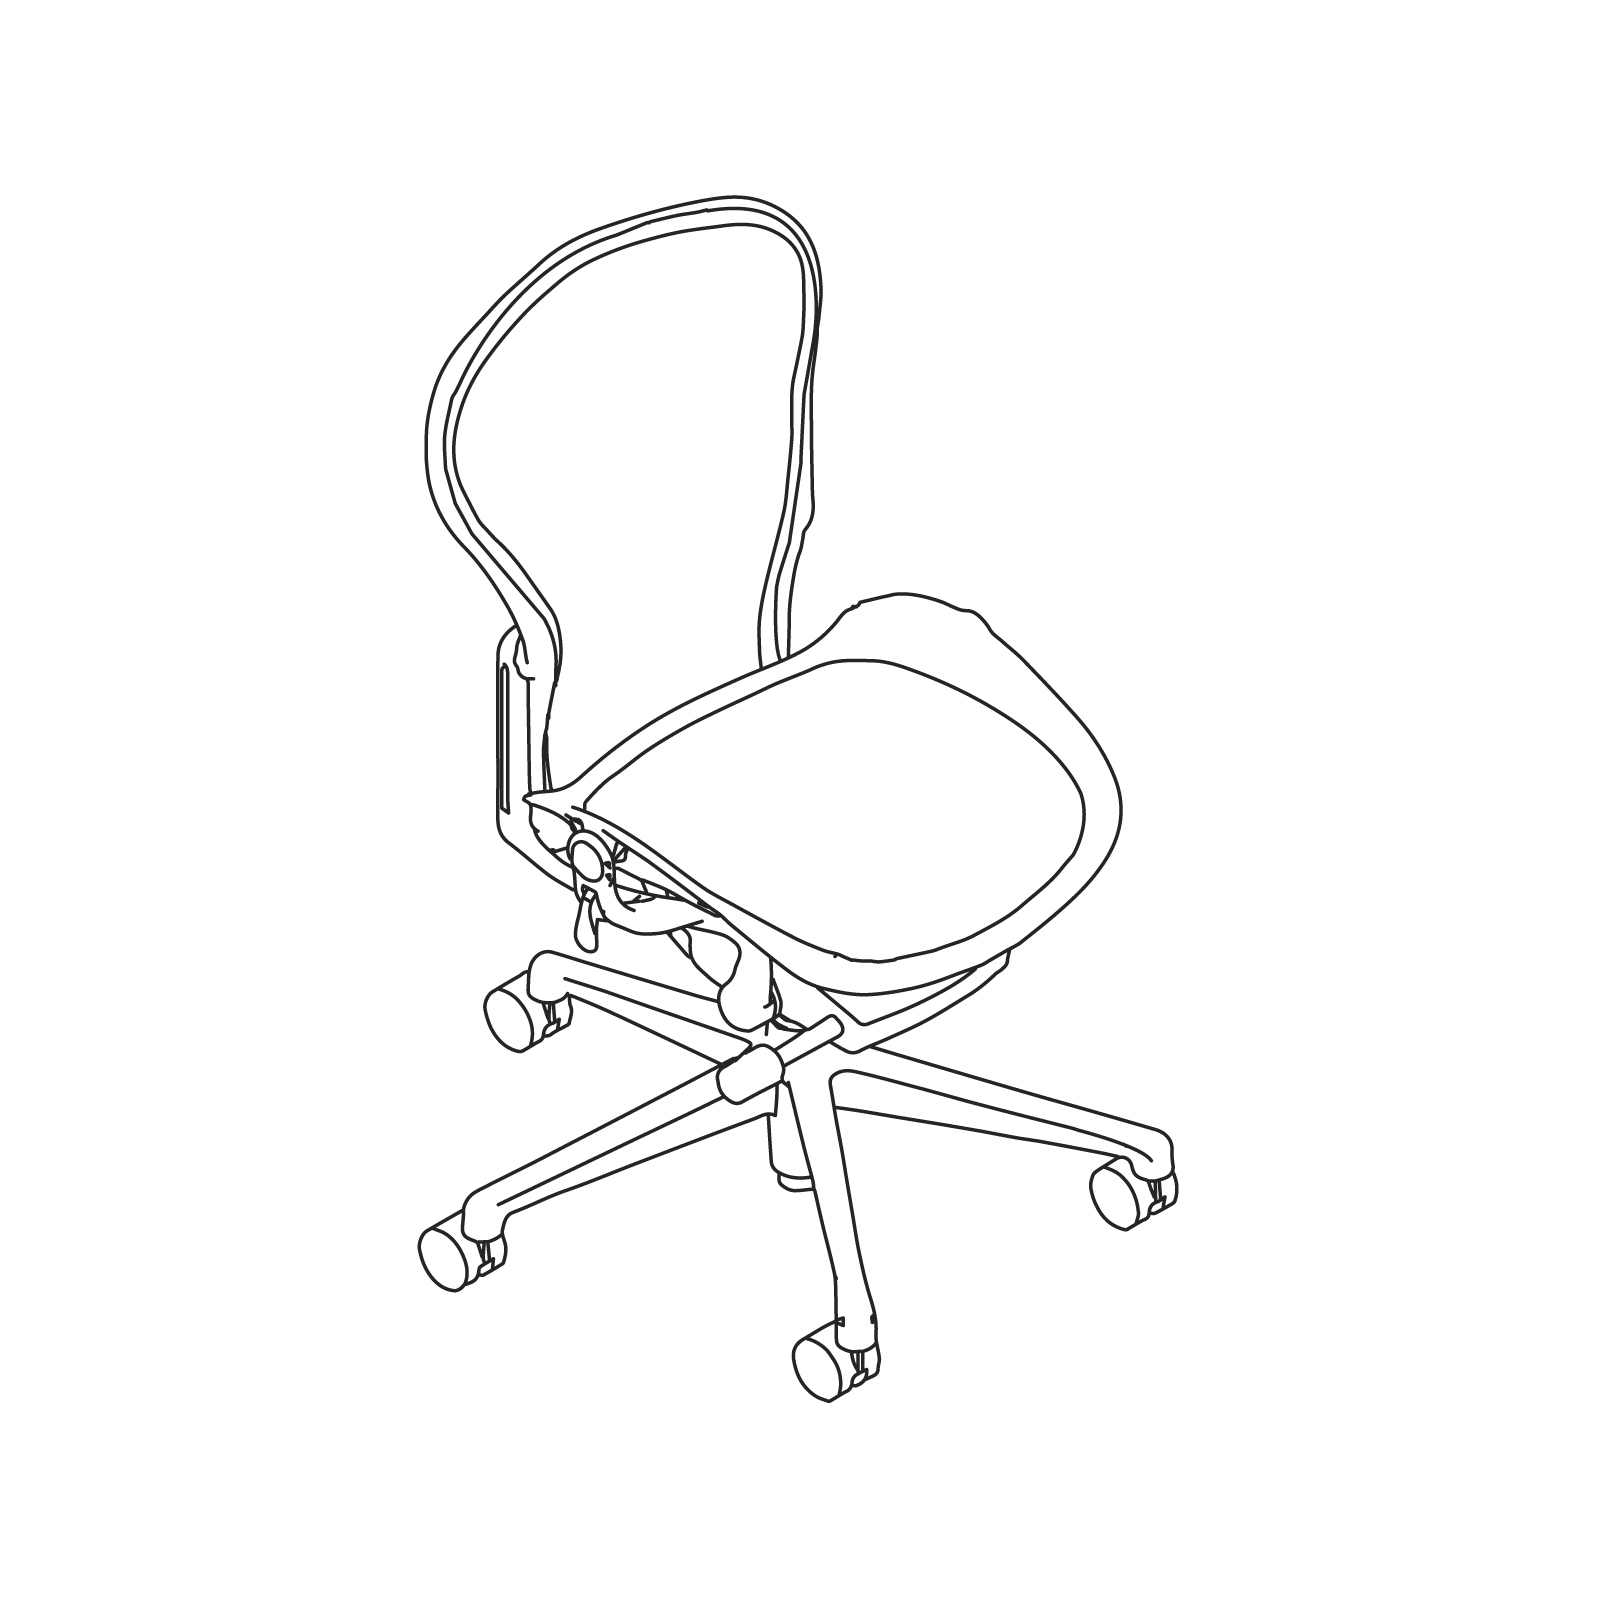 线描图 - Aeron座椅–A款–无扶手